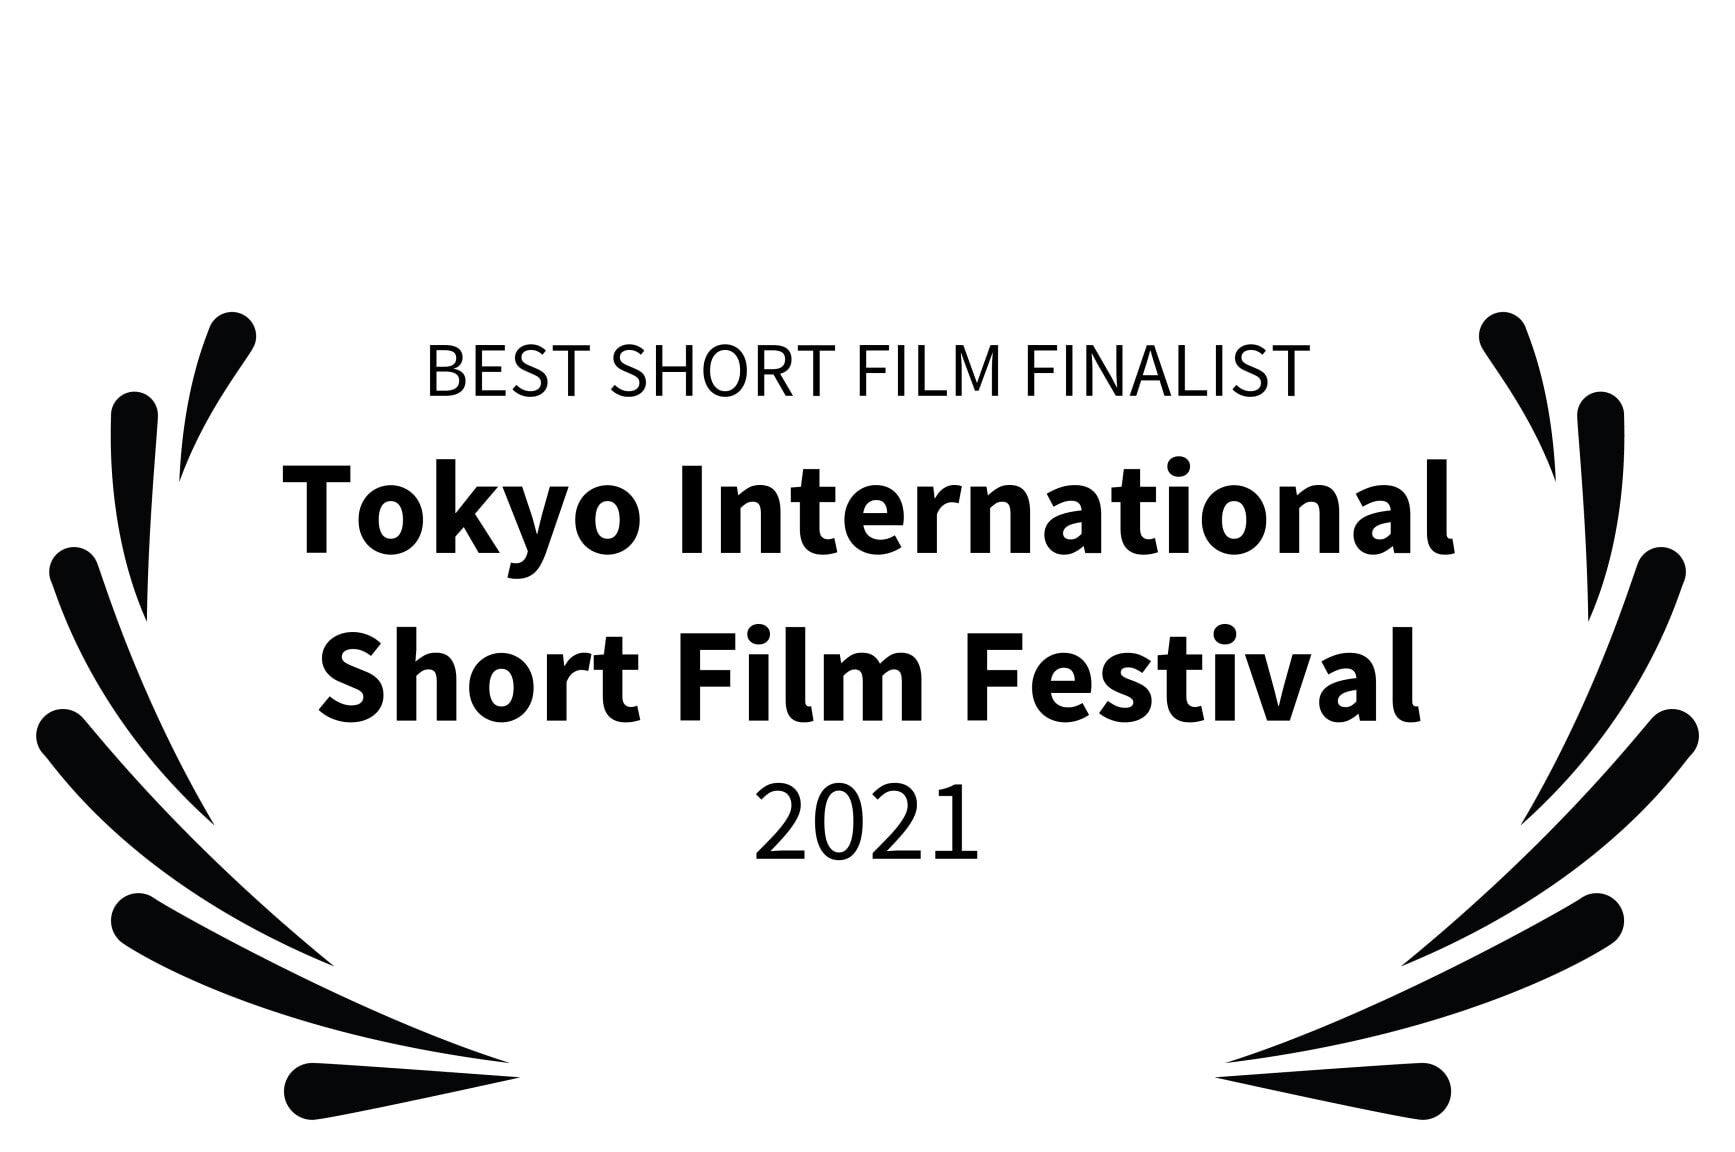 BEST SHORT FILM FINALIST - Tokyo International Short Film Festival - 2021